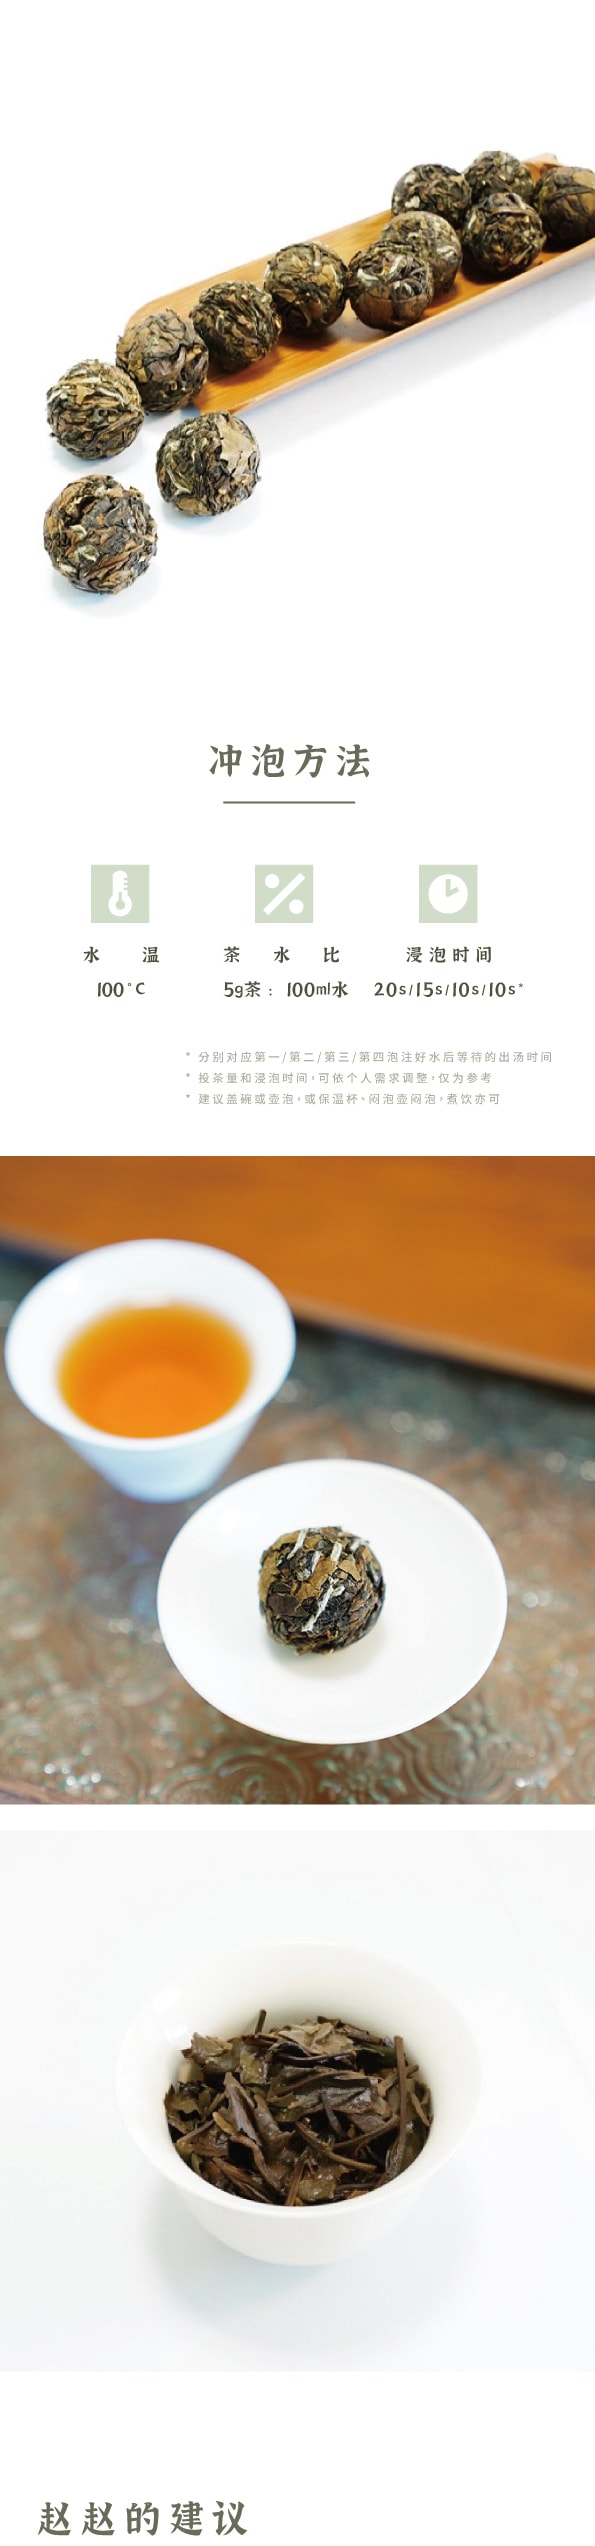 美国 赵赵的茶 ZhaoTea 贡眉龙珠三连泡 老白茶 福建福鼎 香糯甜醇 一颗一泡 15g(5gx3)